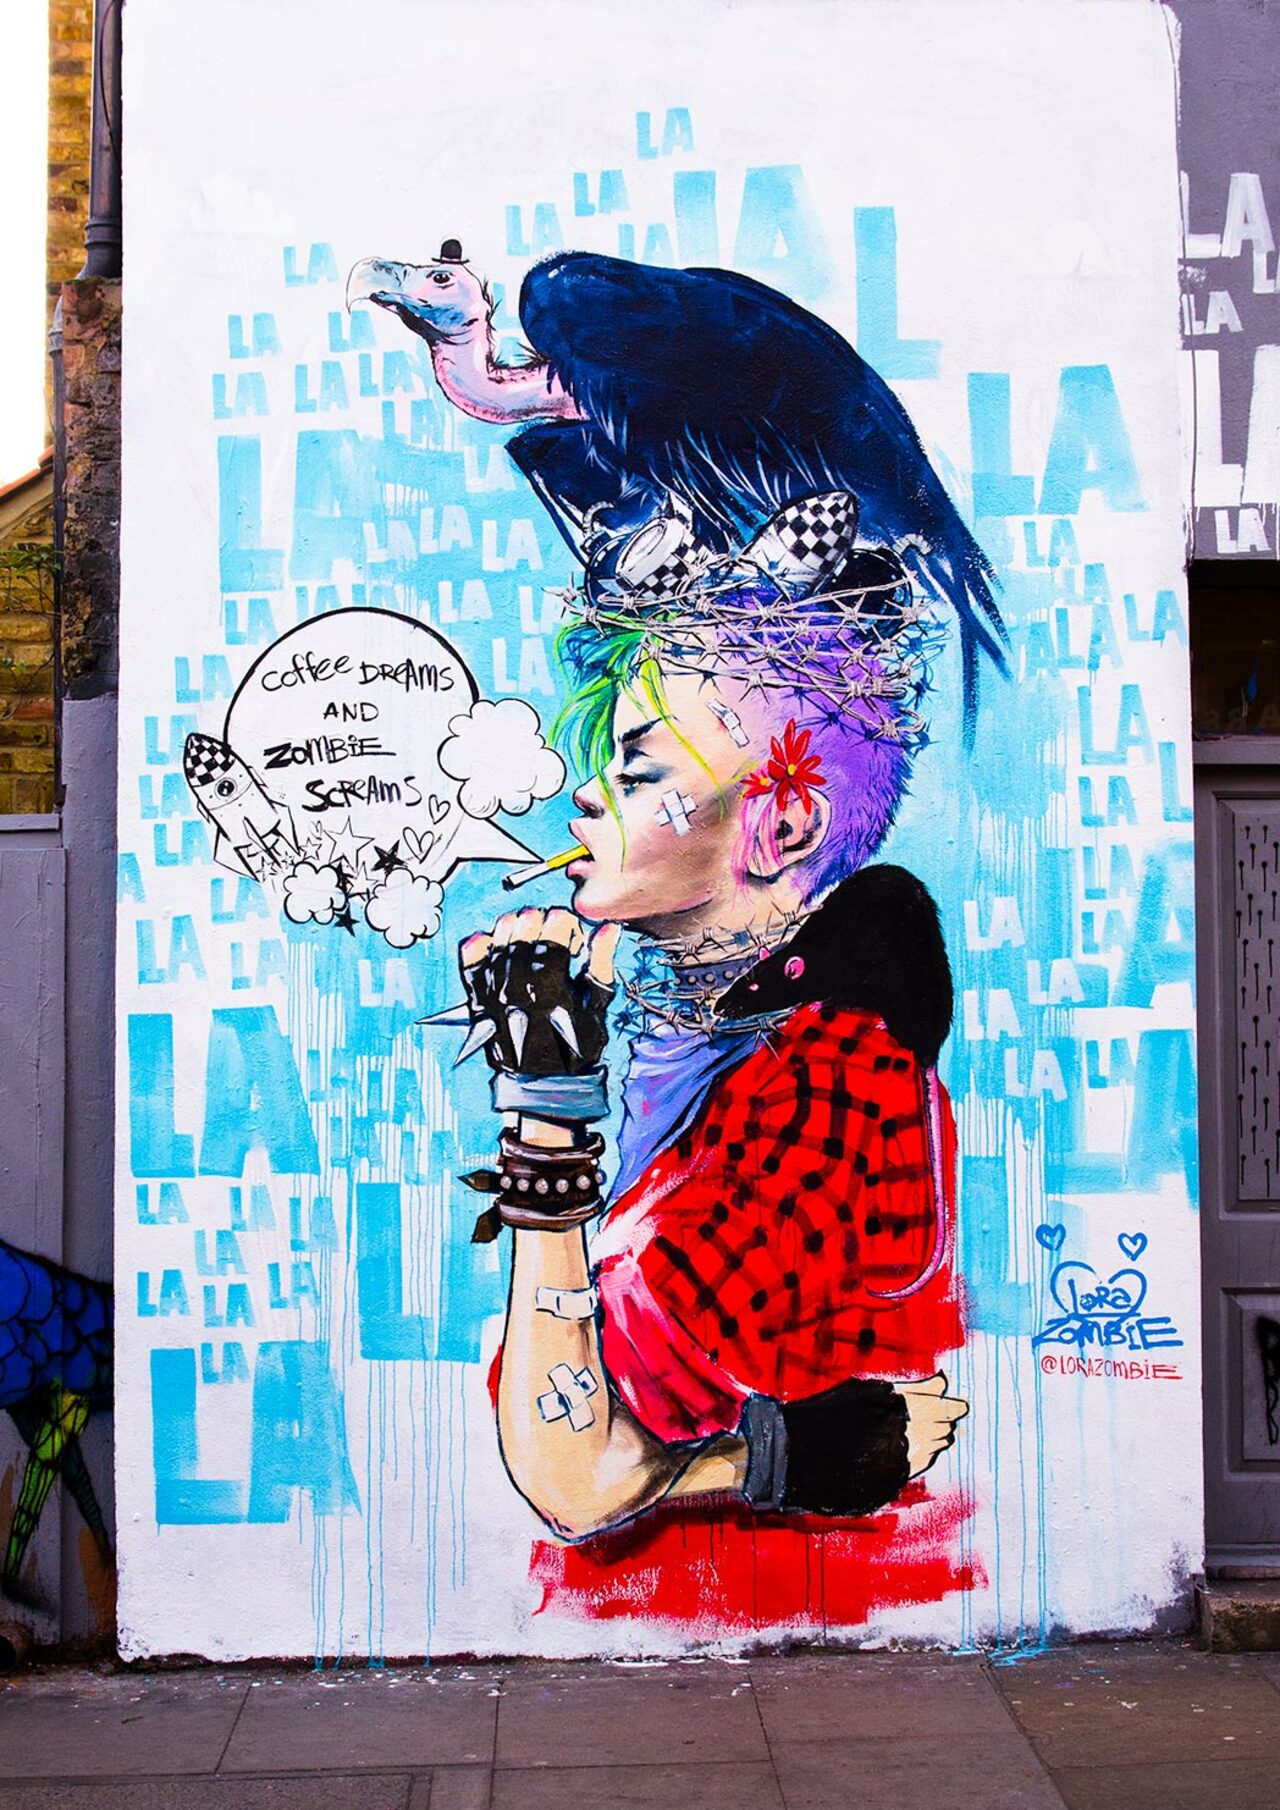 Great work by London based artist Lora Zombie in Shoreditch, London, UK #streetart #artderue #artedelcalle #стритарт #граффити #urbanart #arteurbano #mural #graffiti #sprayart #wallart #lorazombie #shoreditch #london #uk  via Pinterest | https://goo.gl/muEgjy https://t.co/S2sESeHpCD